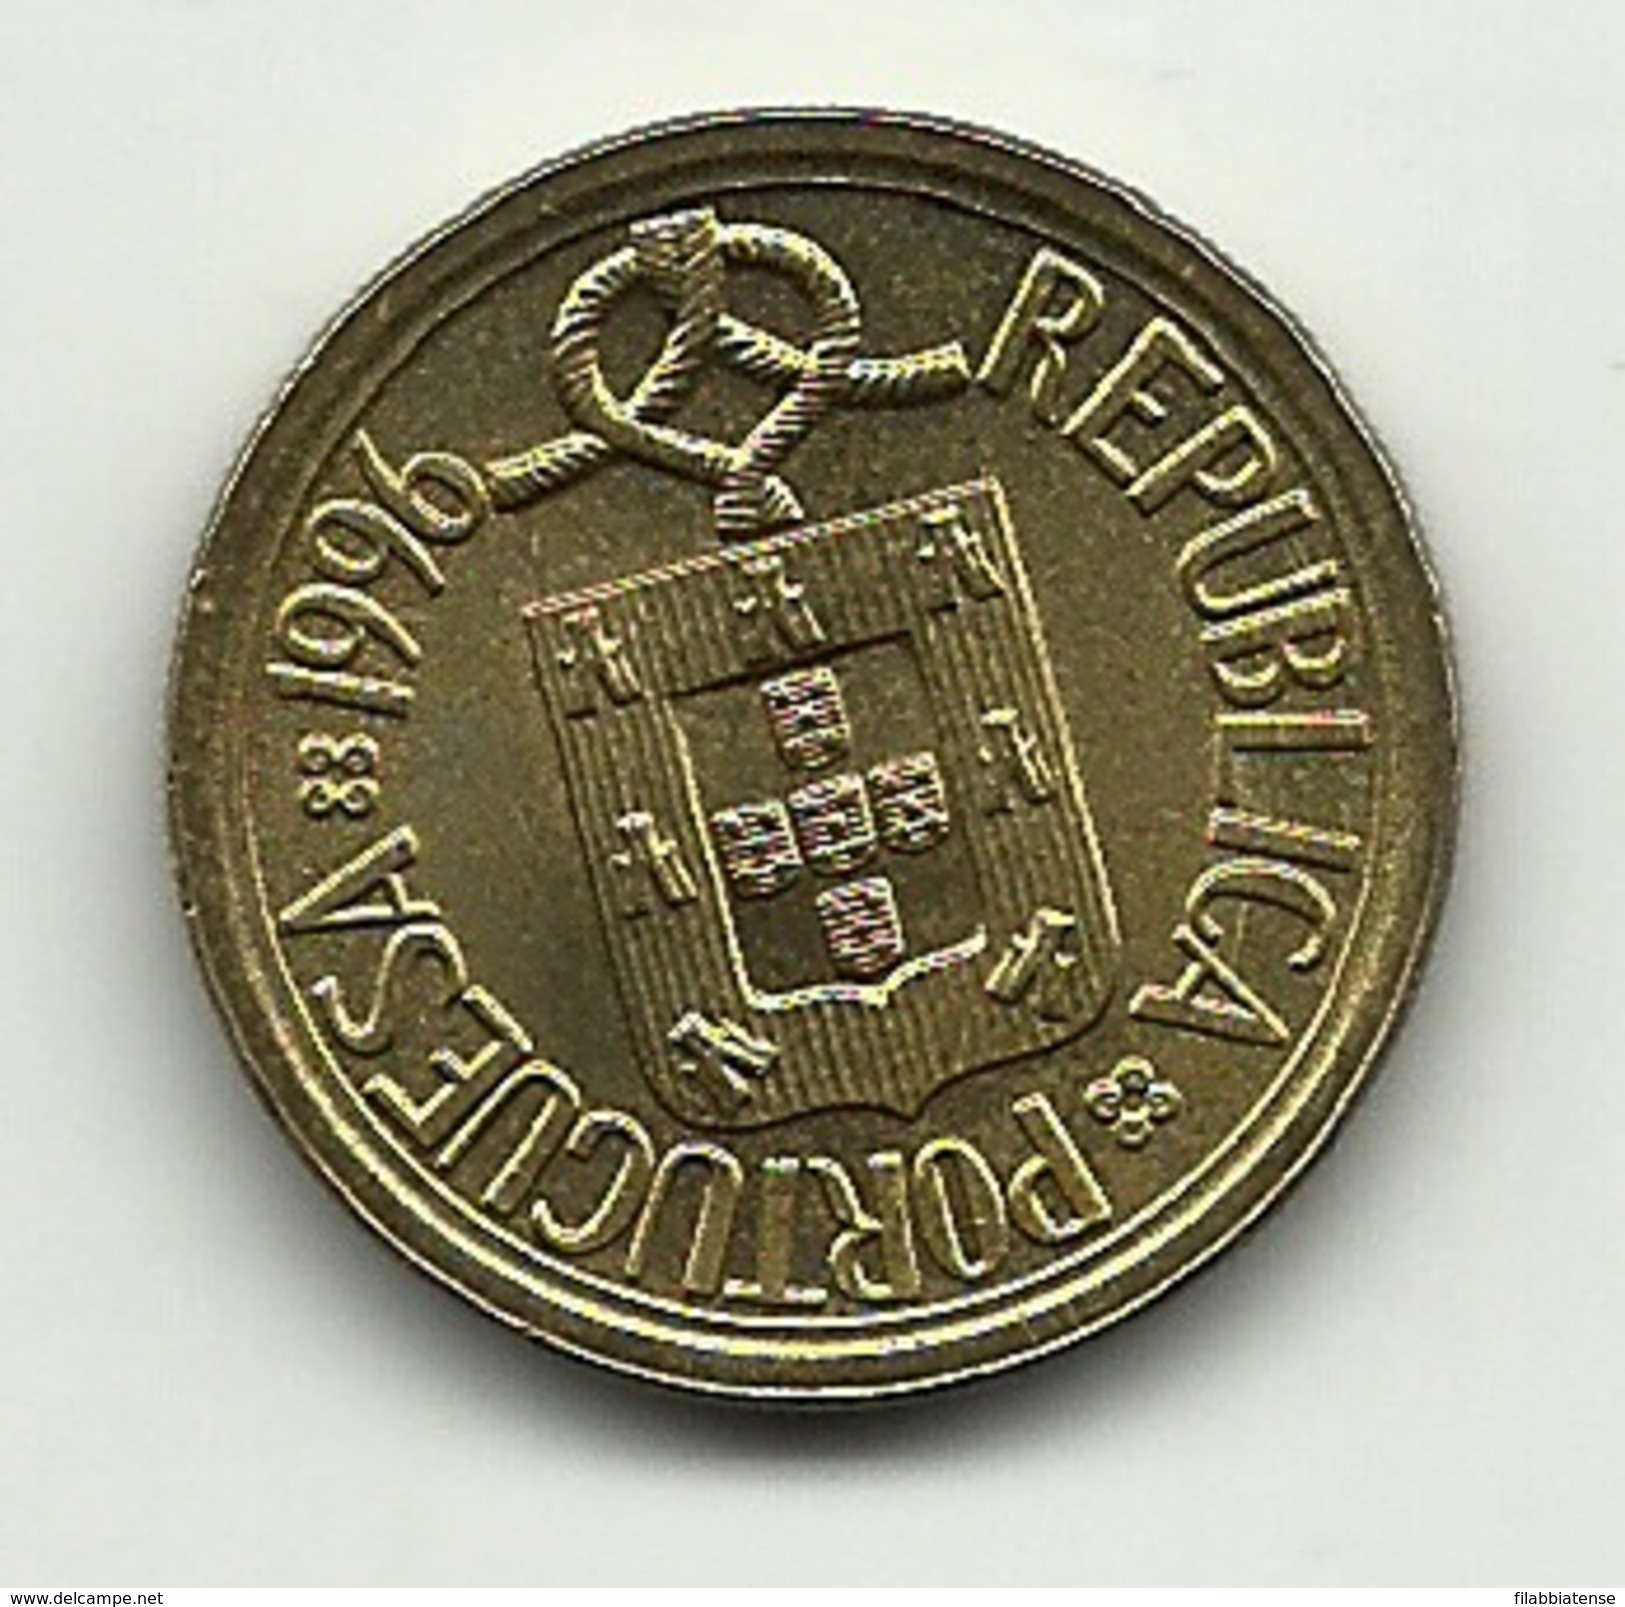 1996 - Portogallo 10 Escudos - Portugal